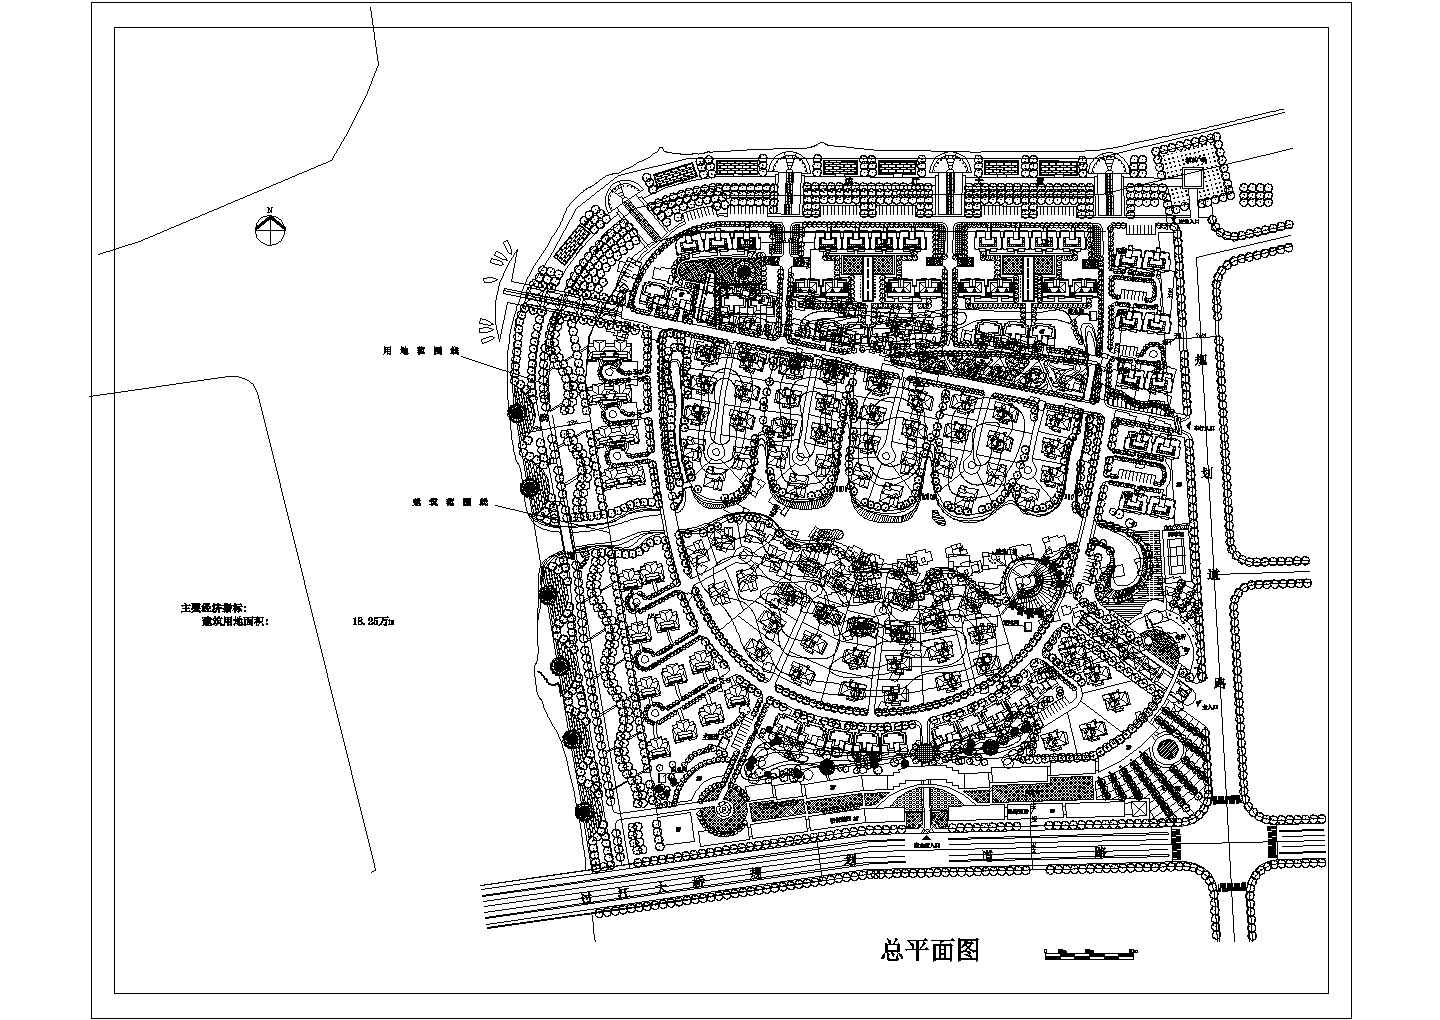 建筑用地18.25万平米（别墅 多层公寓 小高层住宅 沿街商业 会所）小区规划总平面图 cad图纸